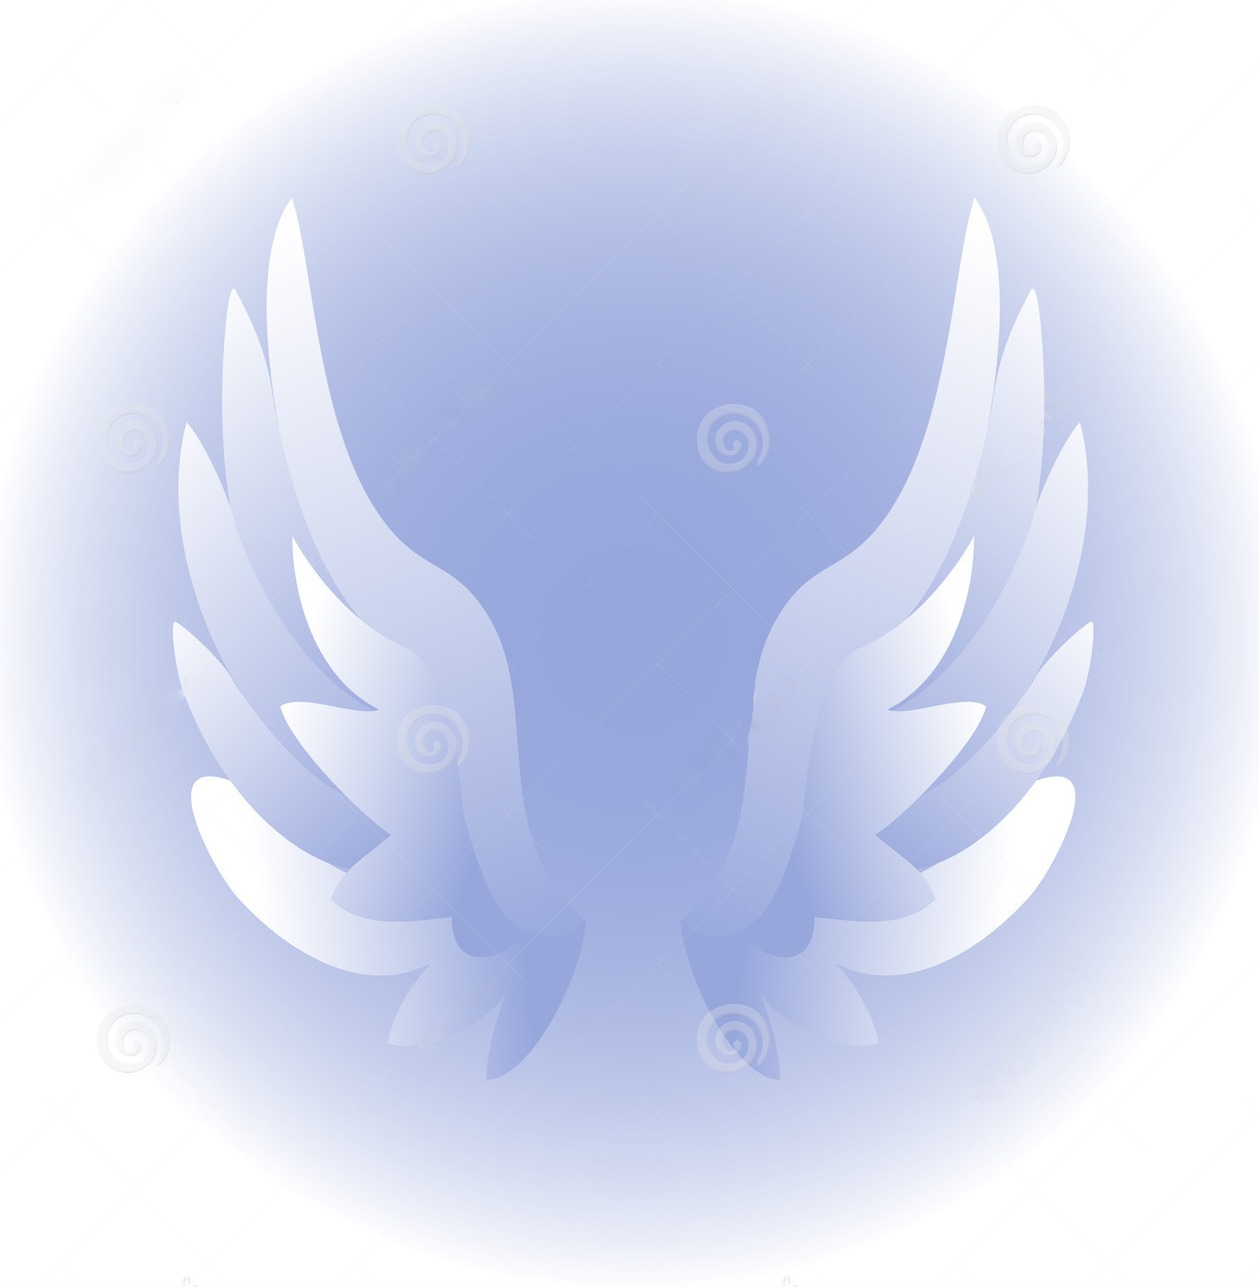 angel-wings-eps-1221807.jpg